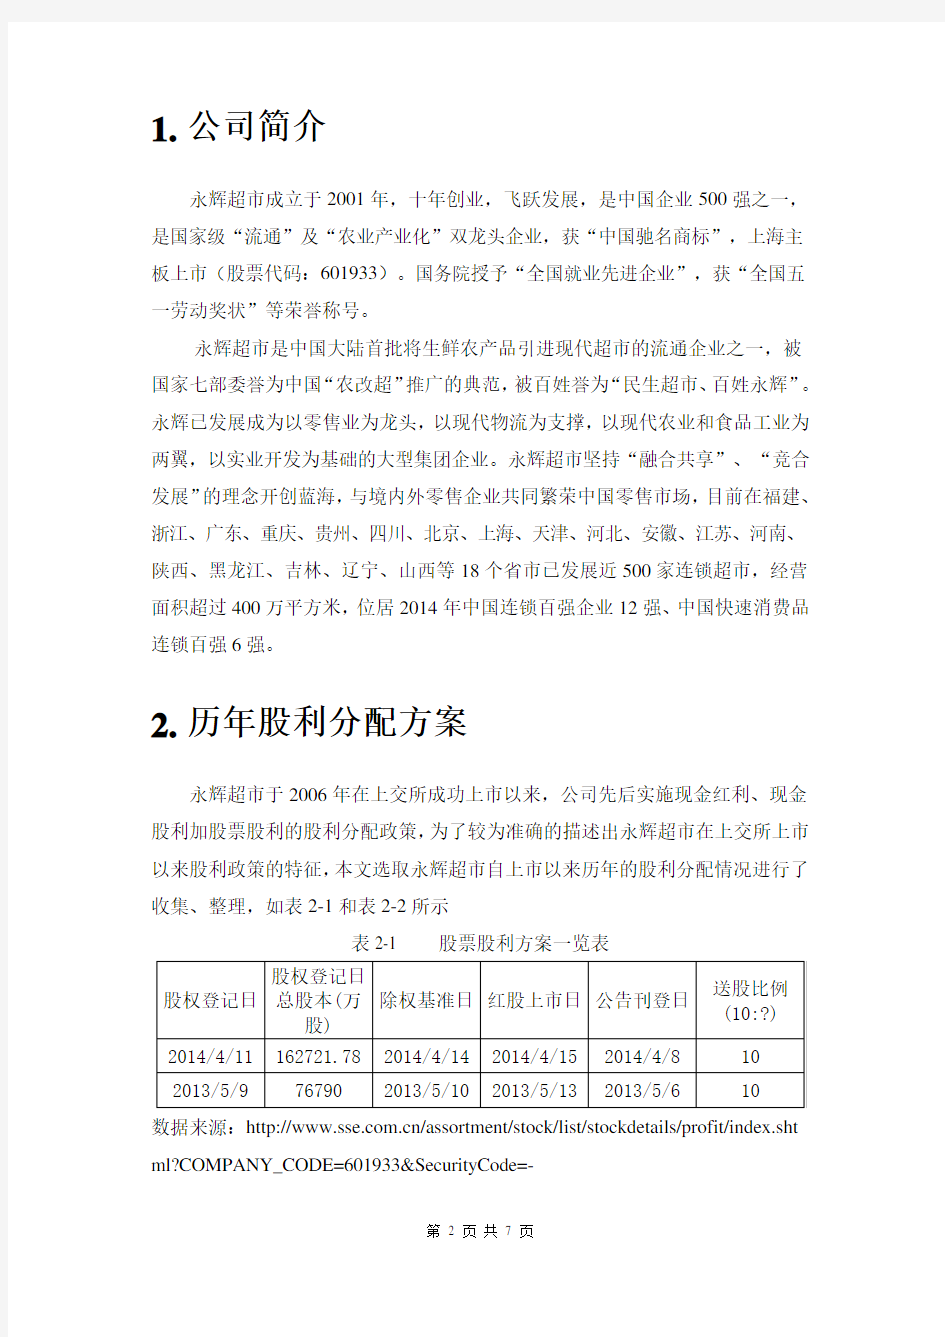 永辉超市股利政策分析